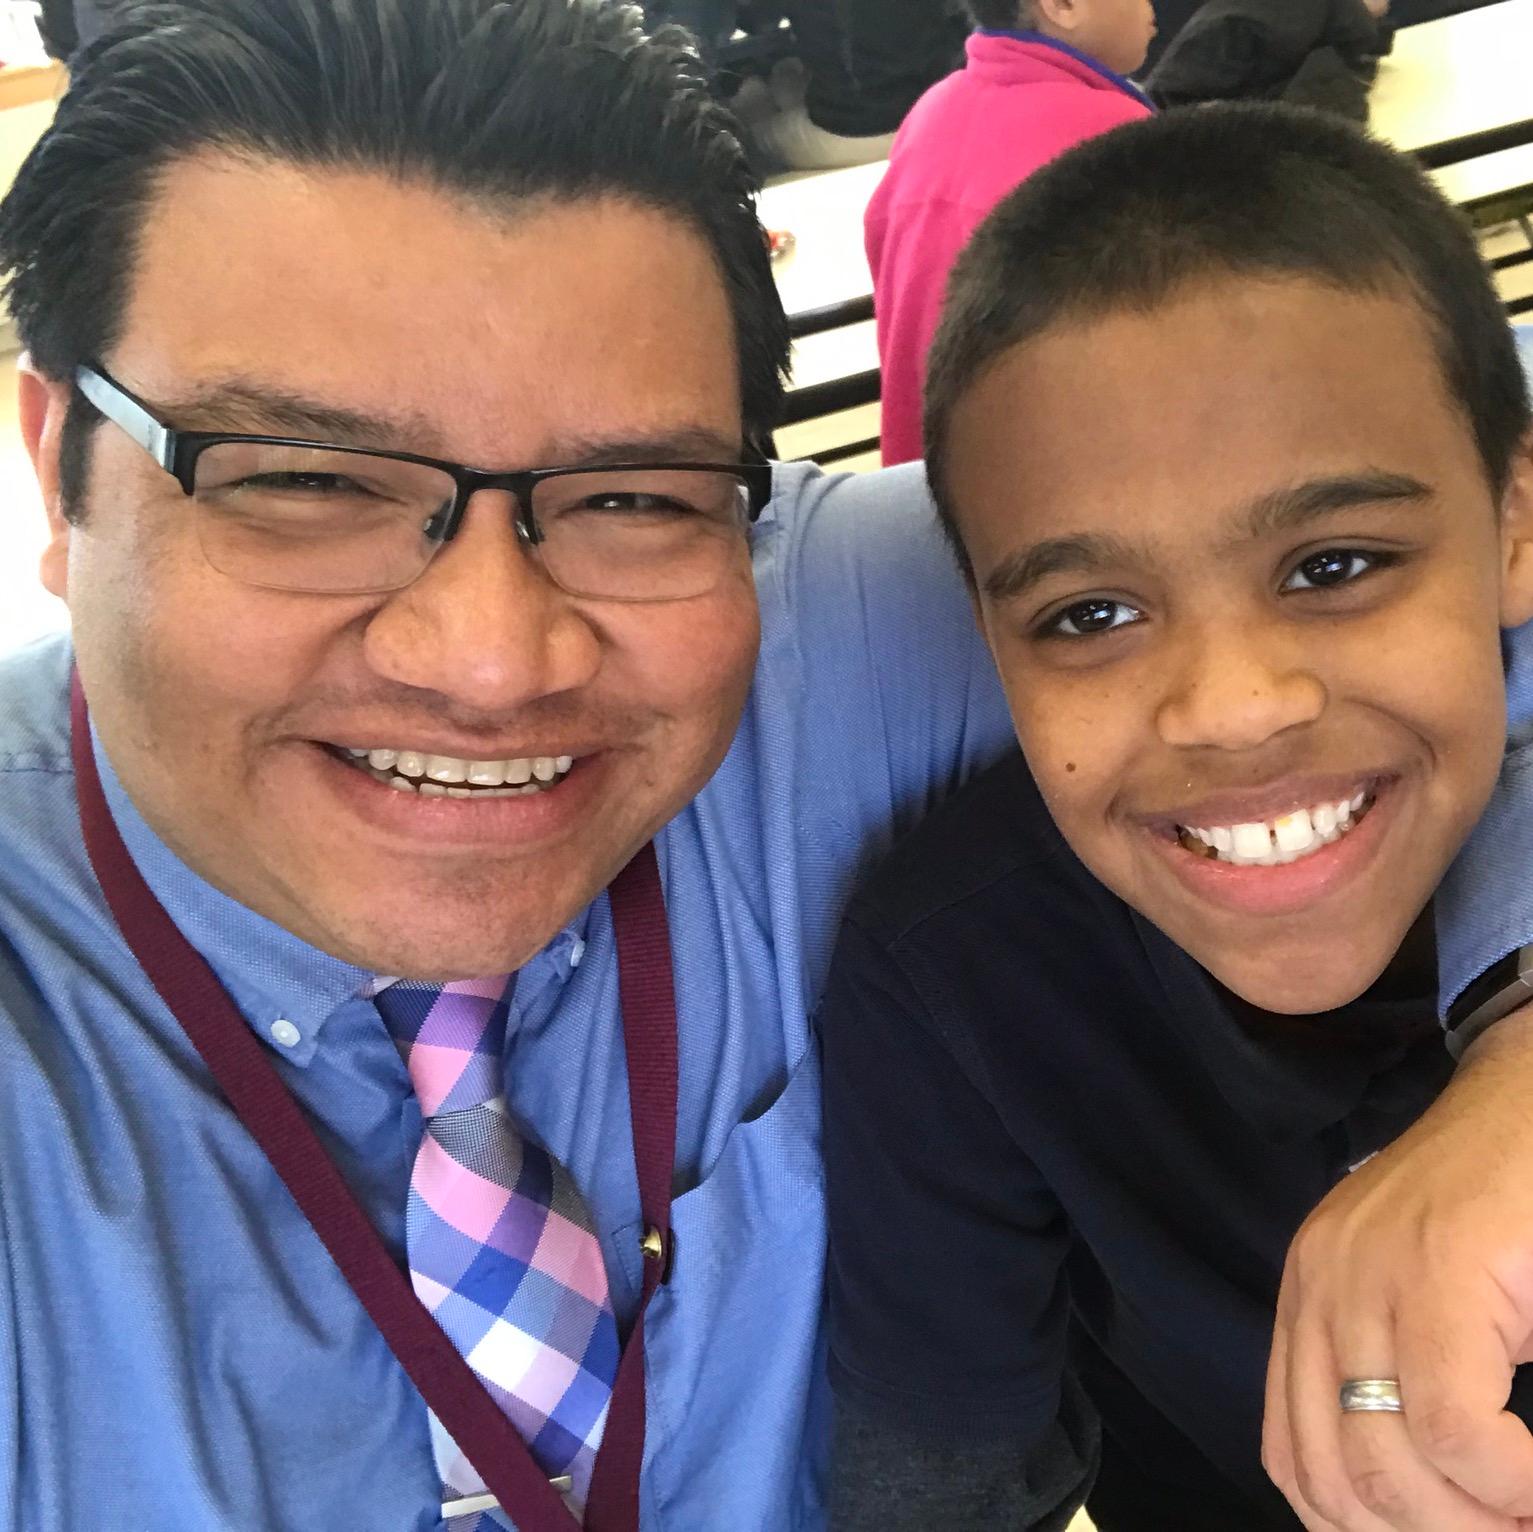 Manny Zaldivar with a student